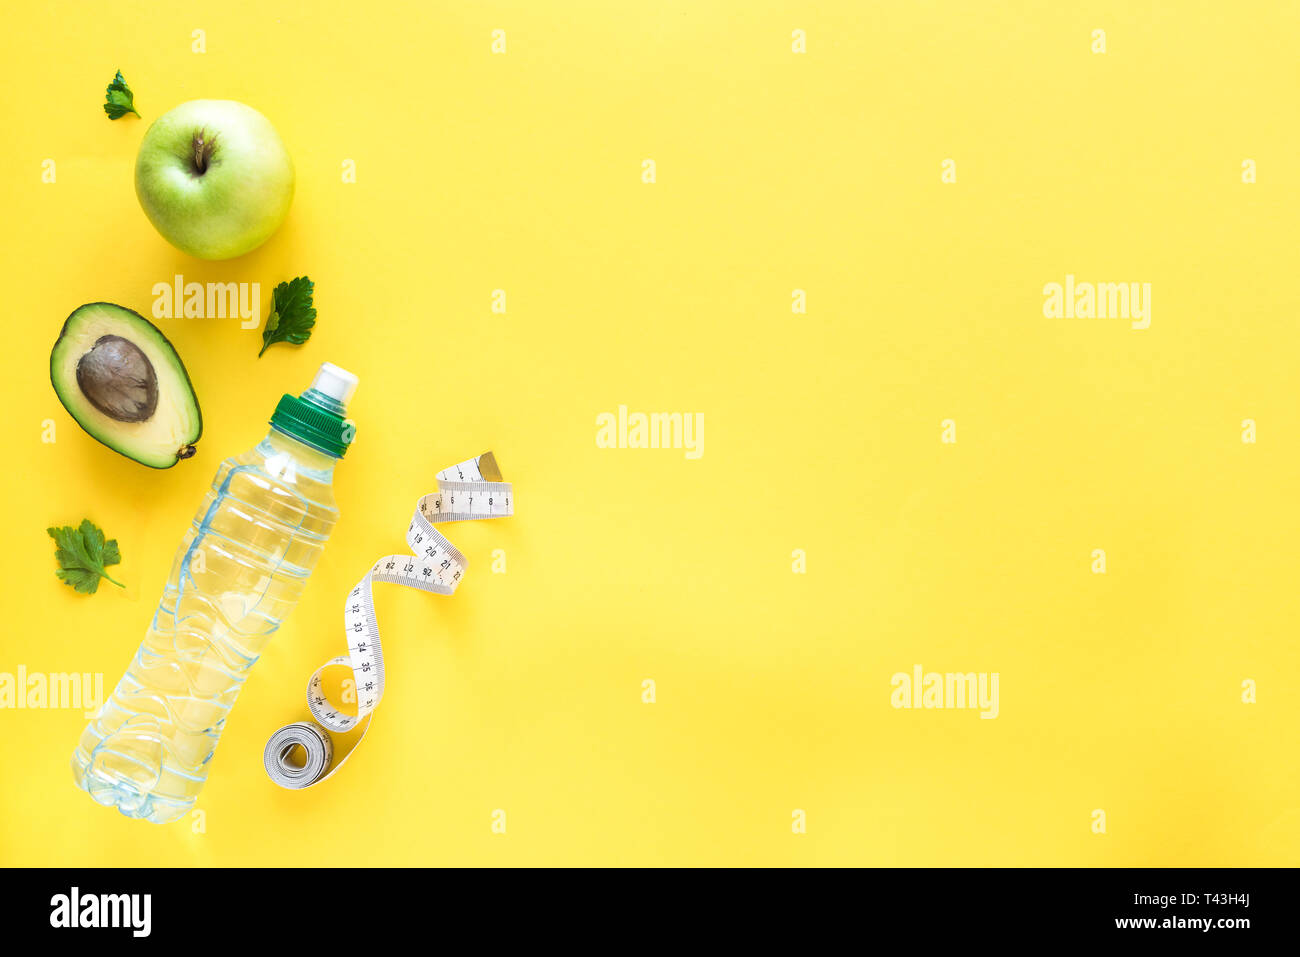 Gesunde Ernährung Konzept auf Gelb, Ansicht von oben, kopieren. Maßband, grüner Apfel, Avocado und Wasser für gesunde Ernährung und Gewichtsreduktion Diät. Stockfoto